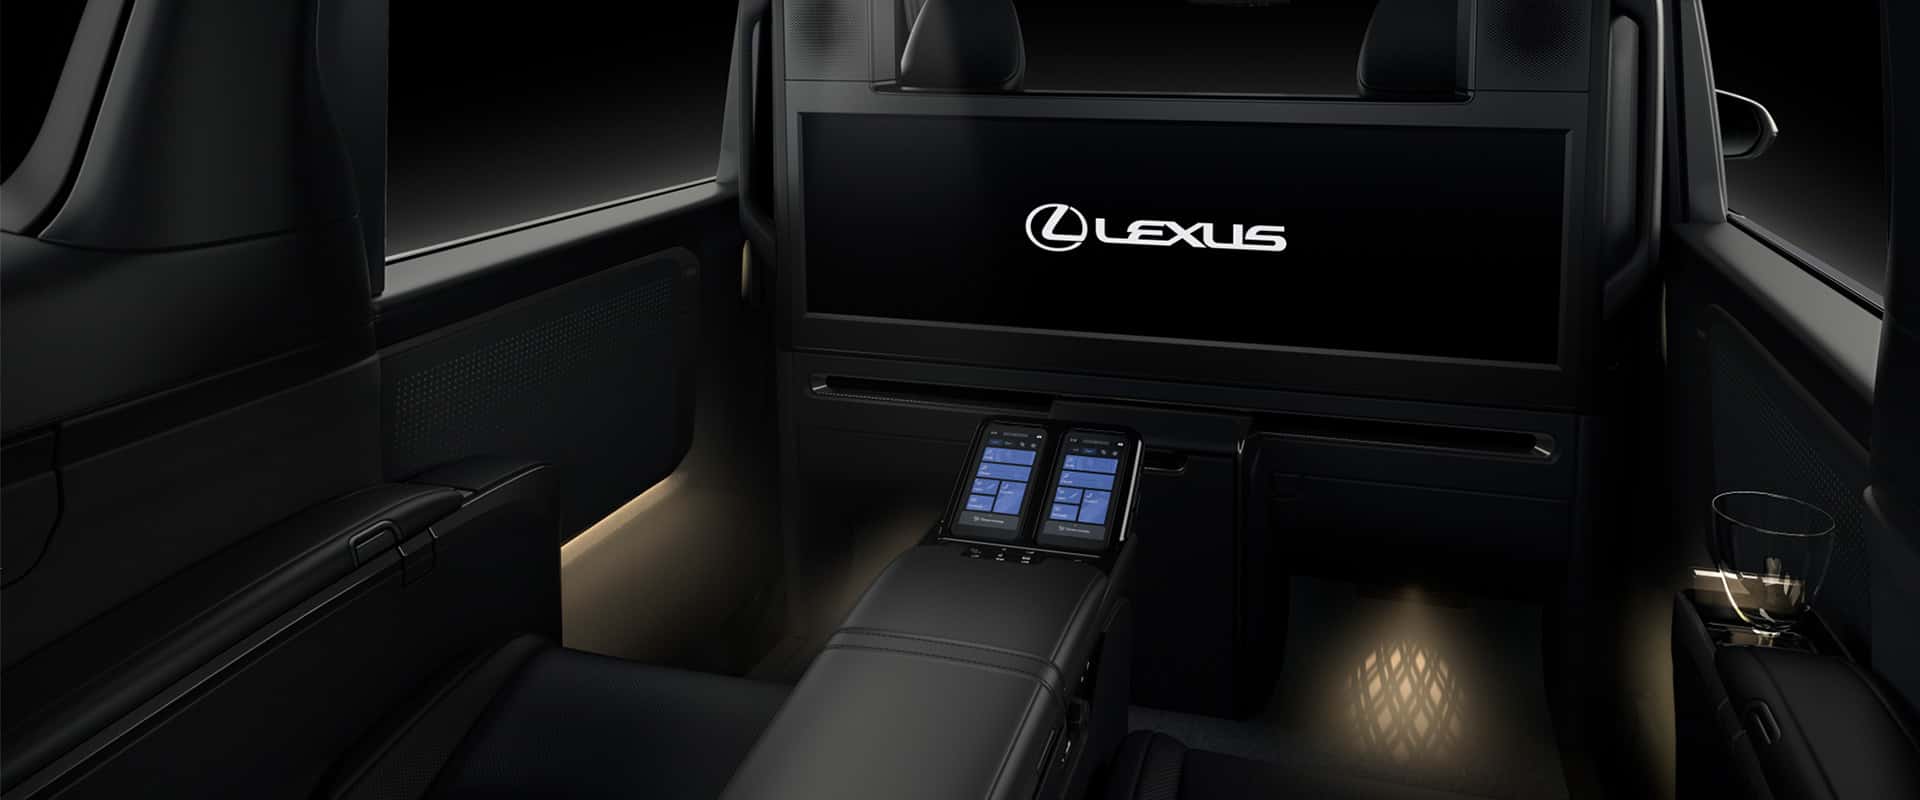 Không gian nội thất Lexus LM 500h thế hệ mới rộng rãi, tràn ngập tiện nghi cao cấp